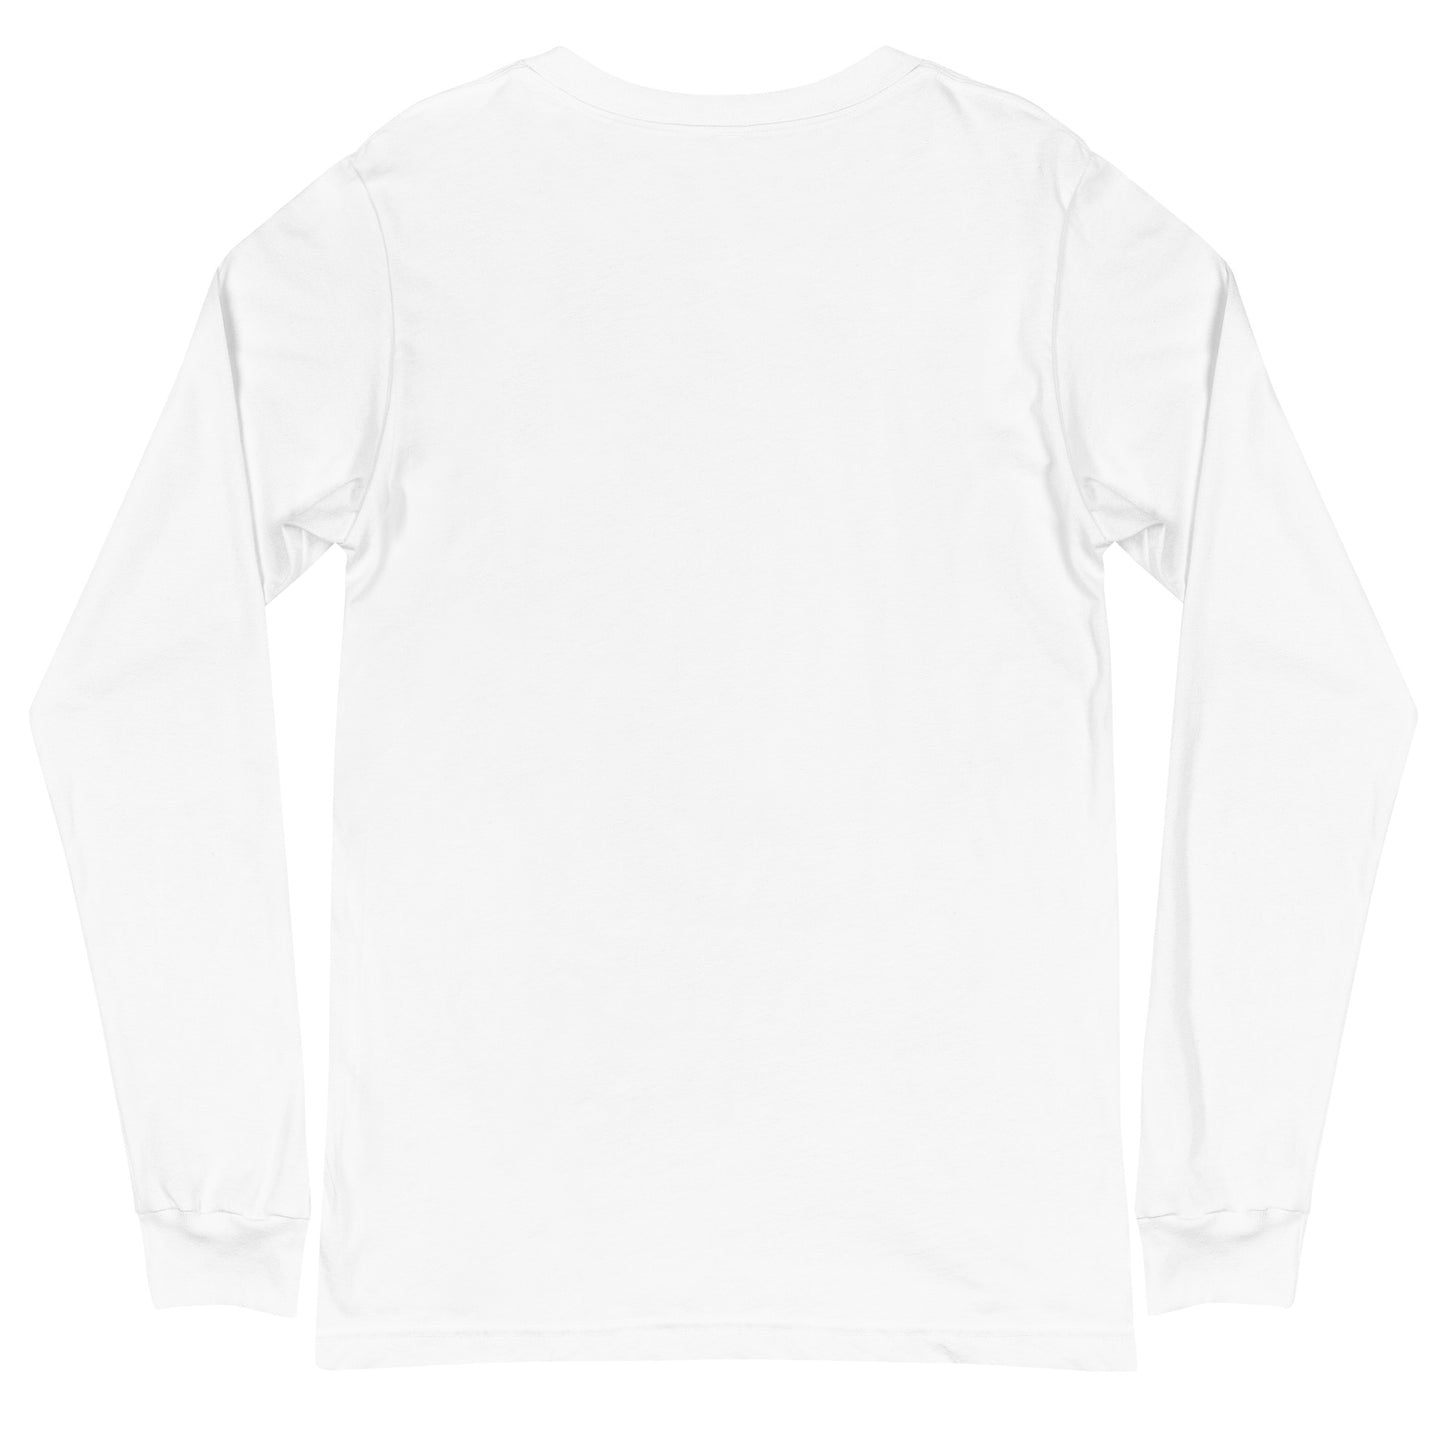 Langärmeliges Unisex-T-Shirt "HBF" (Augen offen)